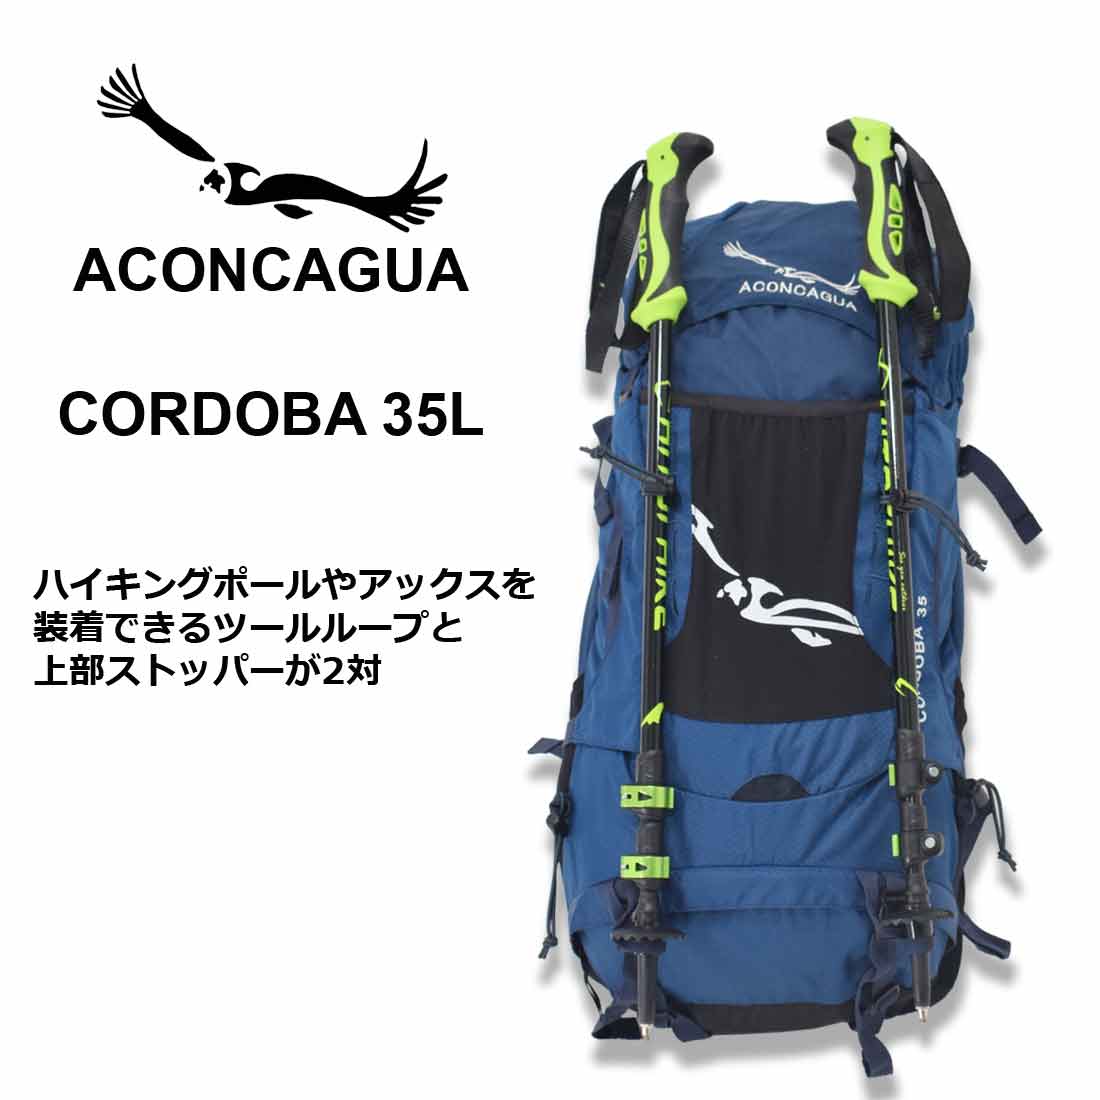 登山用 ハイキング用 登山 リュック 背面 メッシュ 機内持ち込み対応 Cordoba コルドバ 35L 背面ネットで熱がこもらない